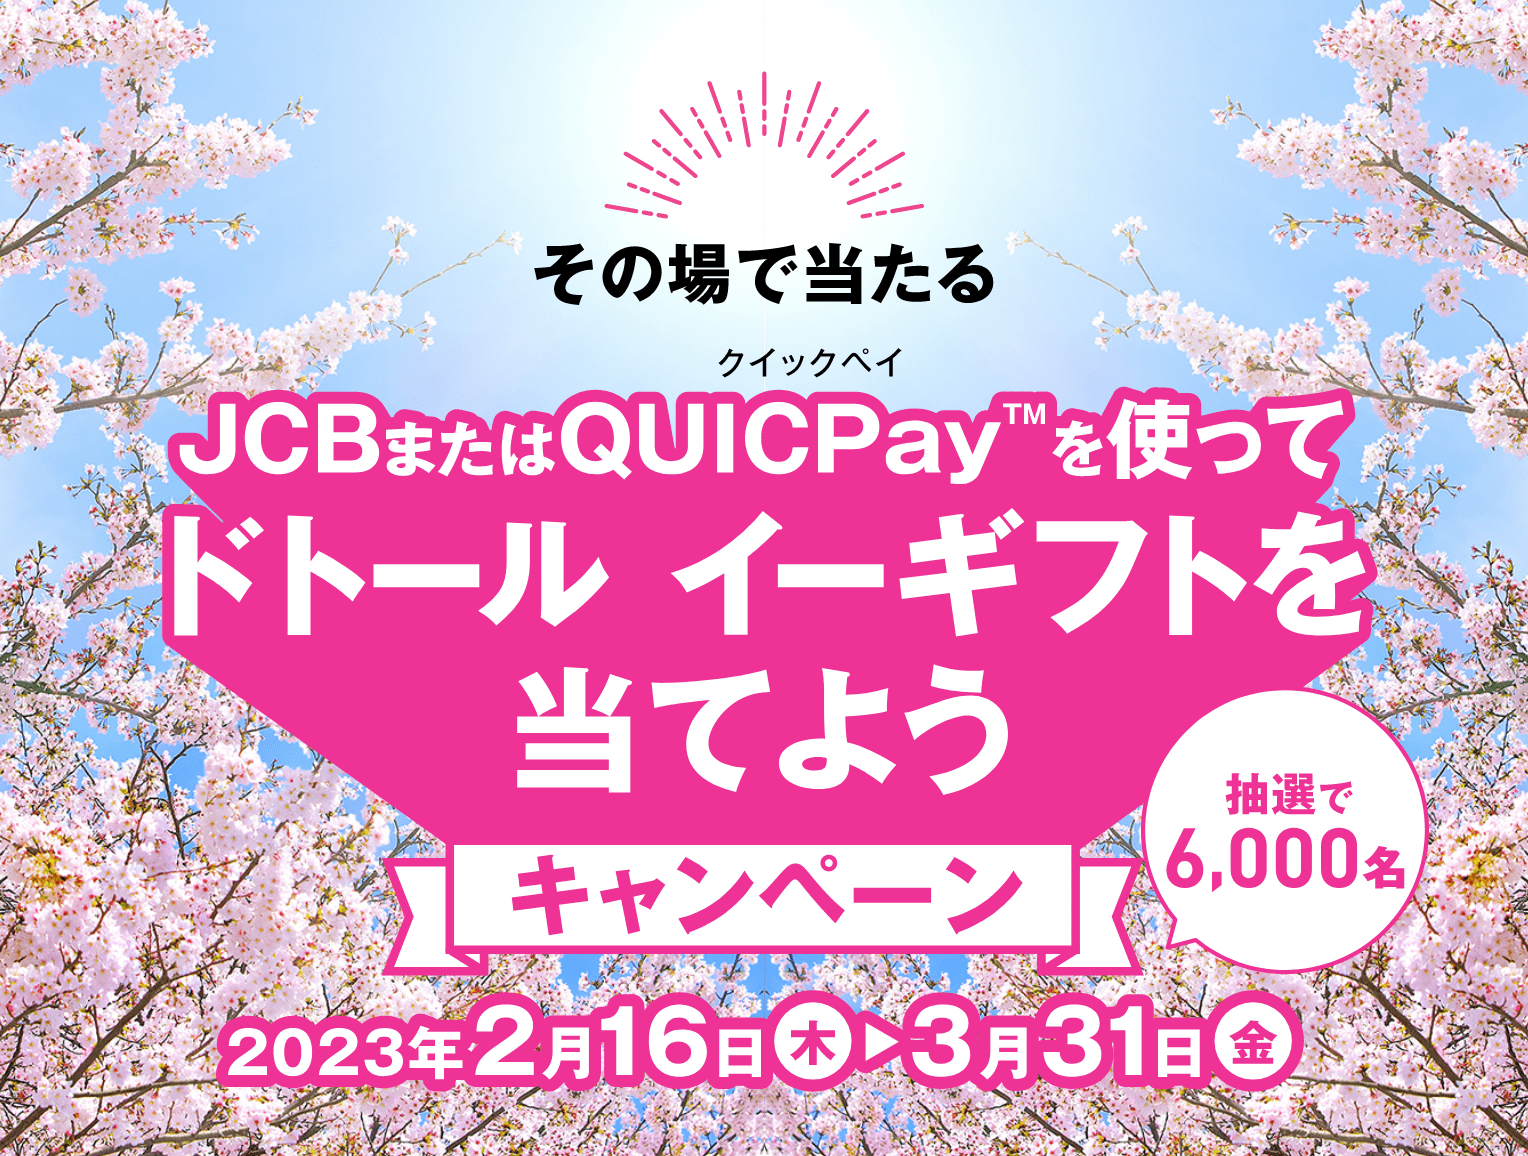 その場で当たる JCBまたはQUICPayを使ってドトール イーギフトを当てよう キャンペーン 抽選で6,000名 2023年2月16日(木) から 3月31日(金)